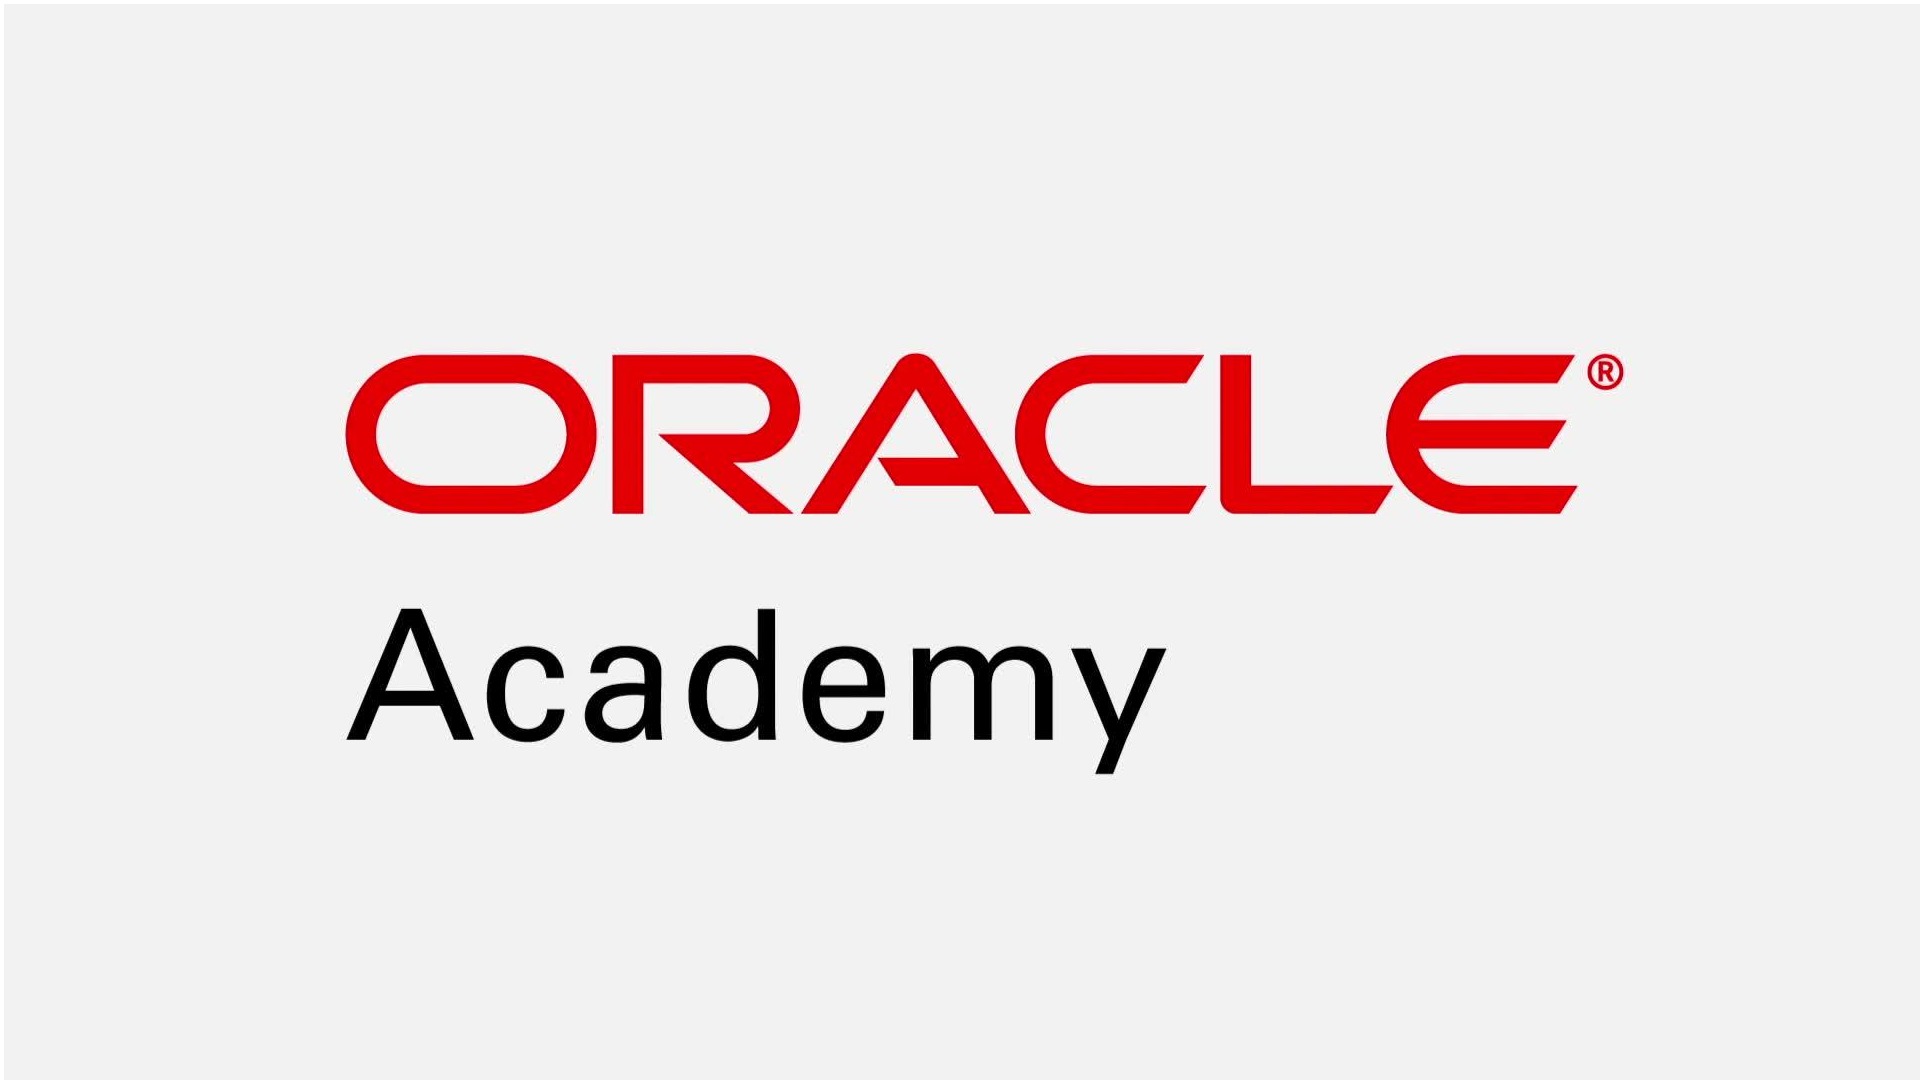 Oracle Academy biedt gratis hulpmiddelen voor computeronderwijs